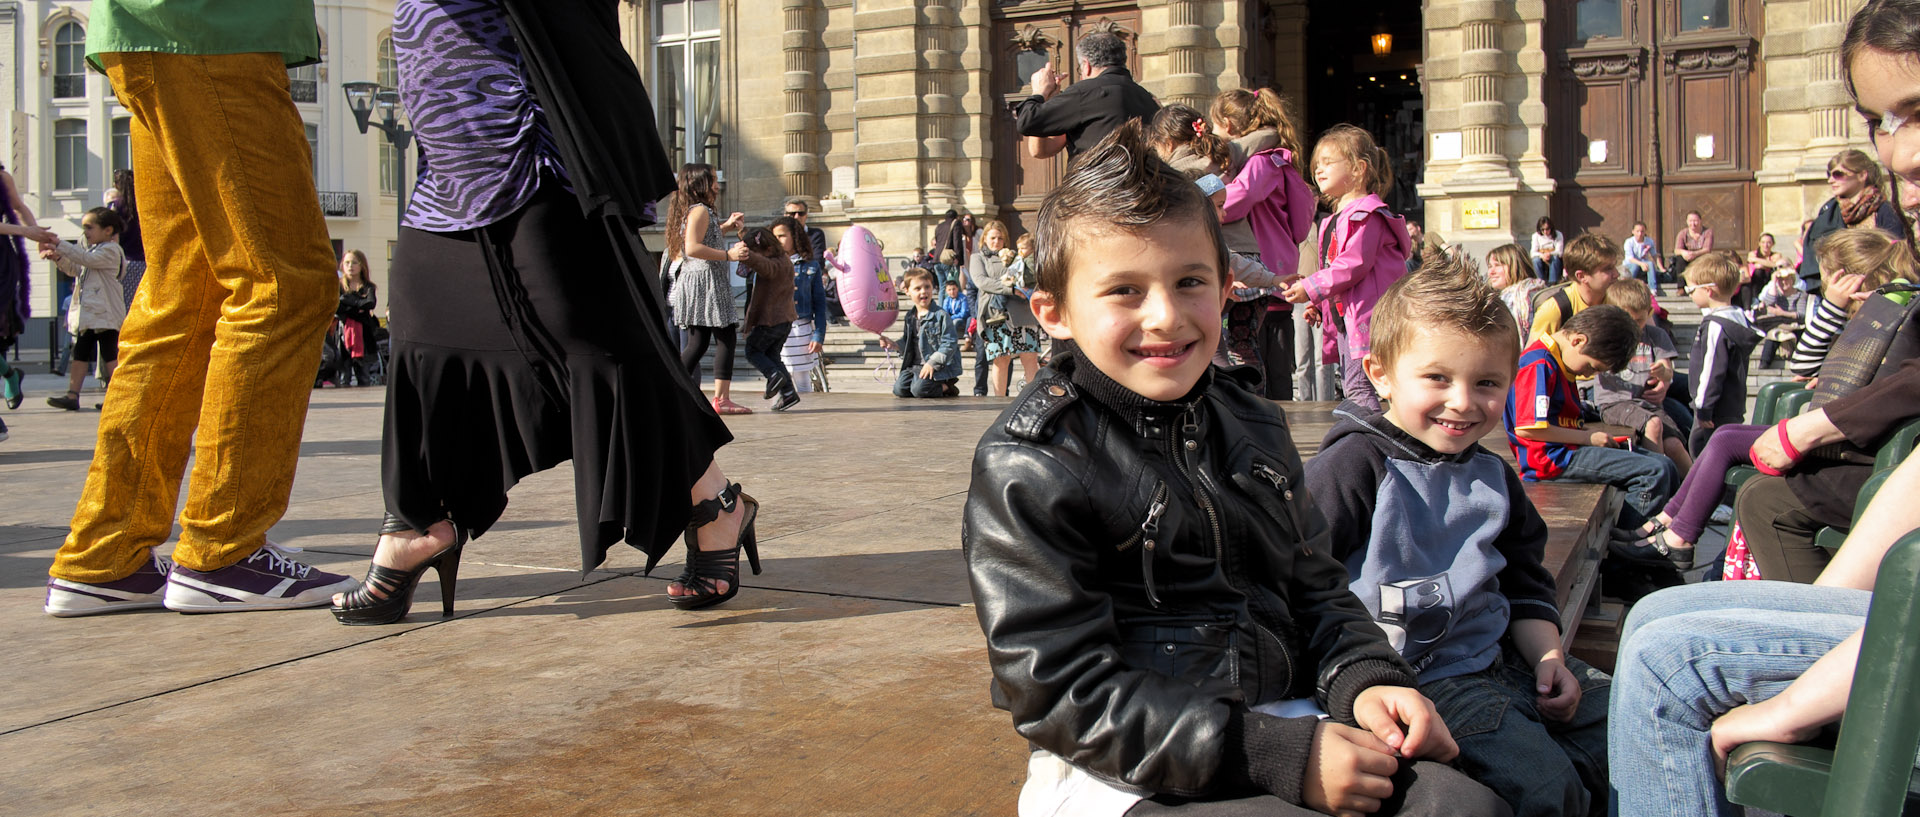 Enfants assis sur une estrade devant des danseurs de tango, pendant le festival des Arts de la rue, à Tourcoing.